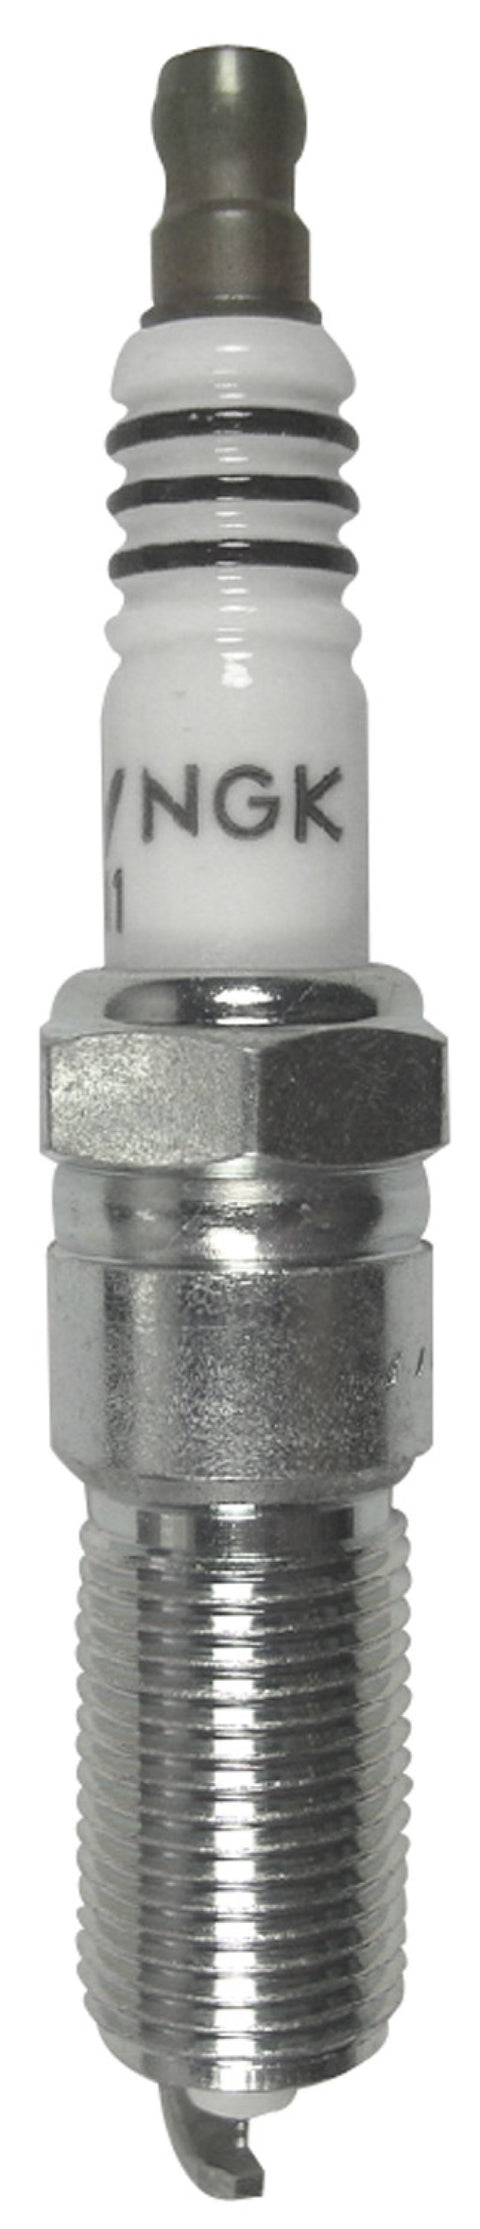 NGK Iridium IX Spark Plug Box of 4 (2313)